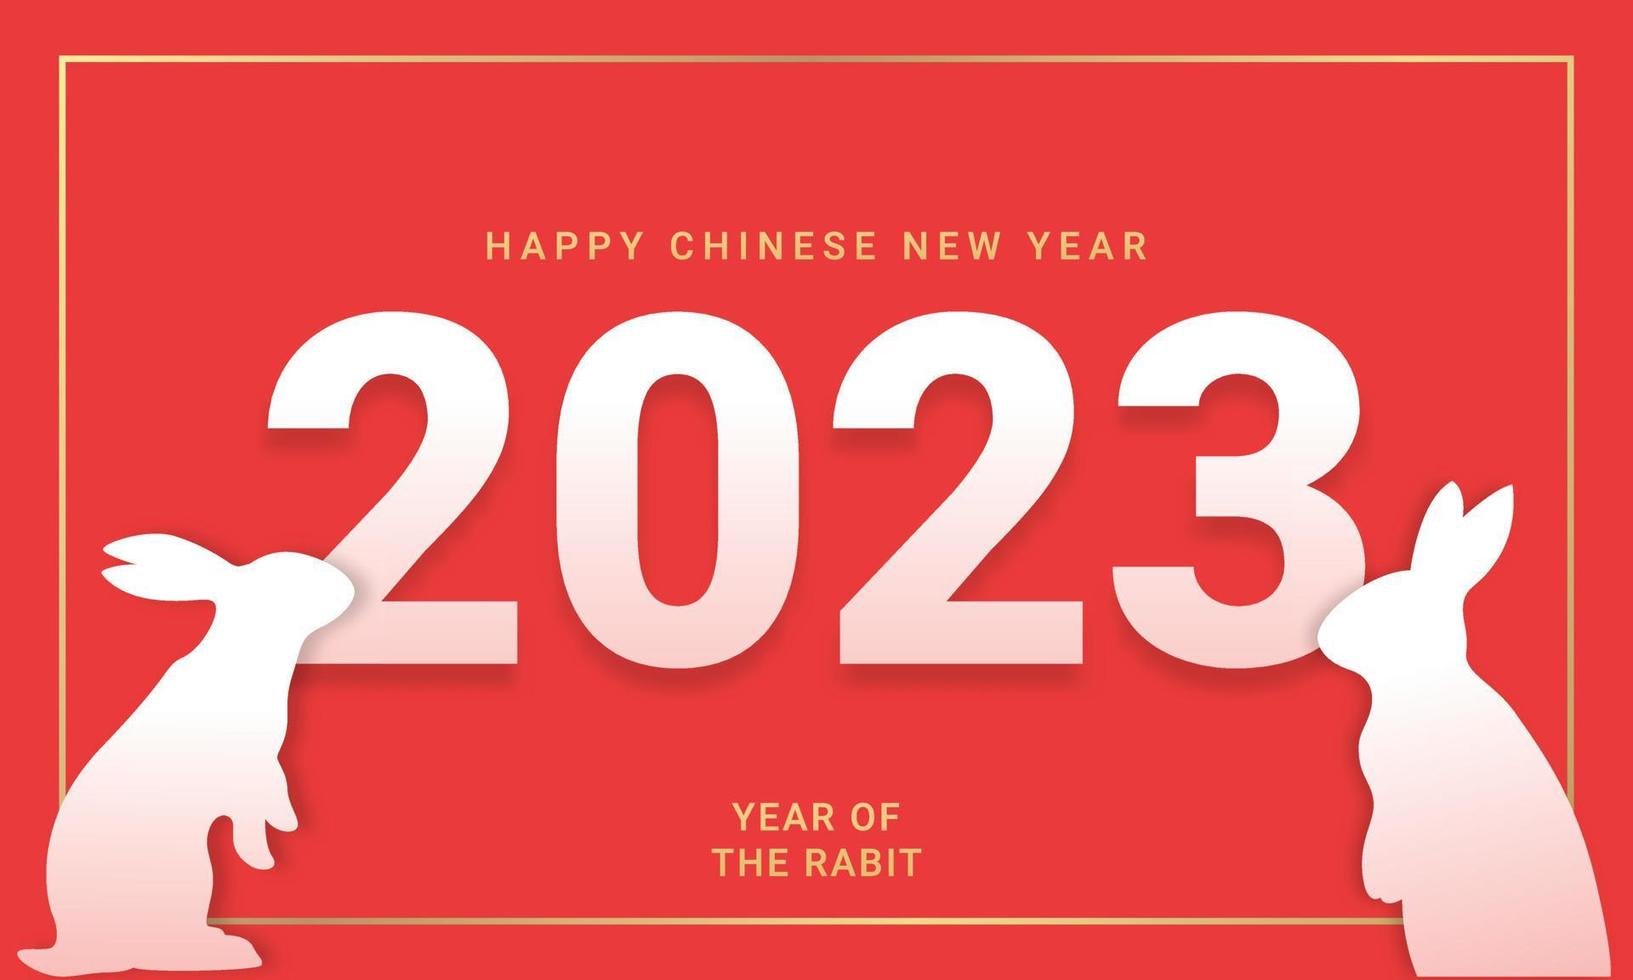 chinees nieuwjaar 2023 kunstpapierstijlontwerp voor wenskaart, poster, websitebanner vector